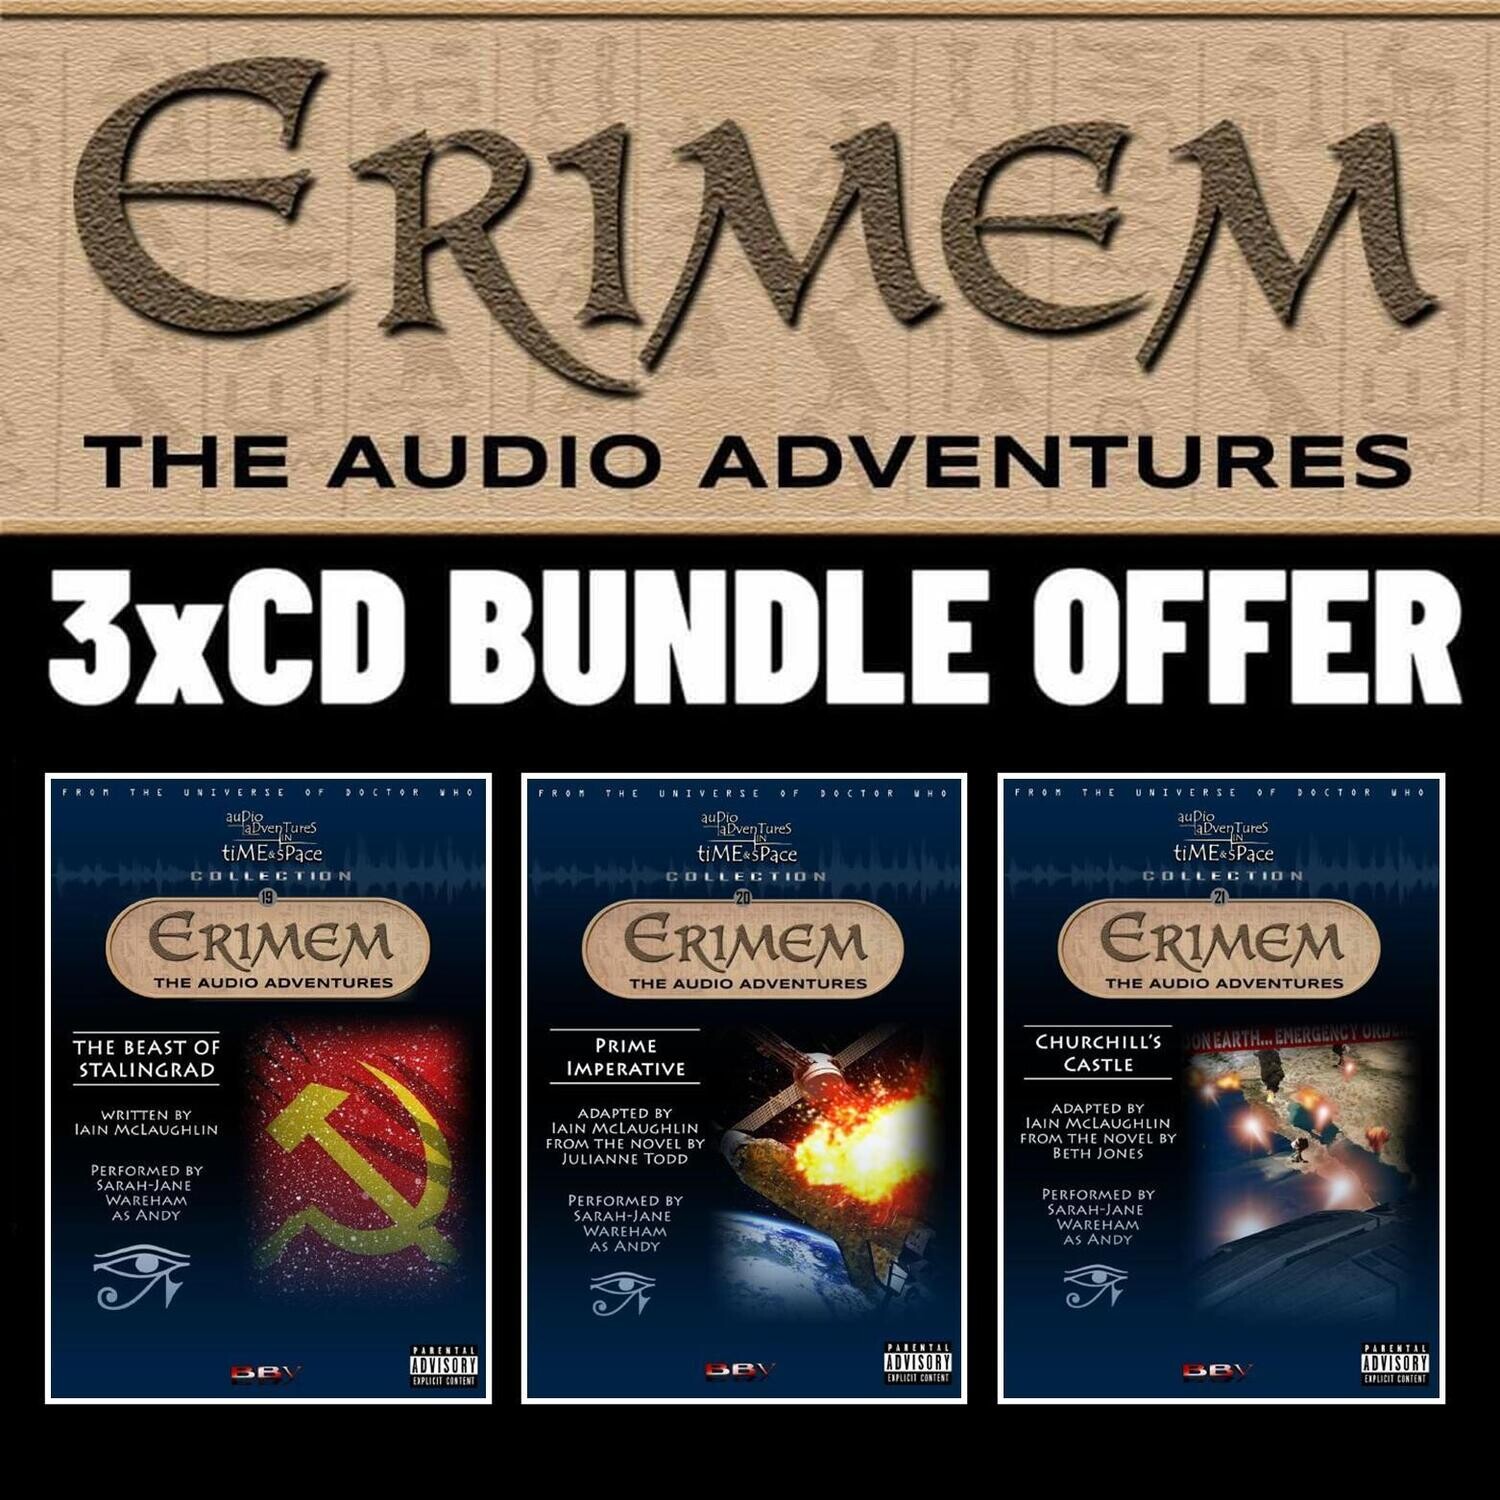 Erimem 3 CD-R Bundle UK ONLY - IN DVD CASES